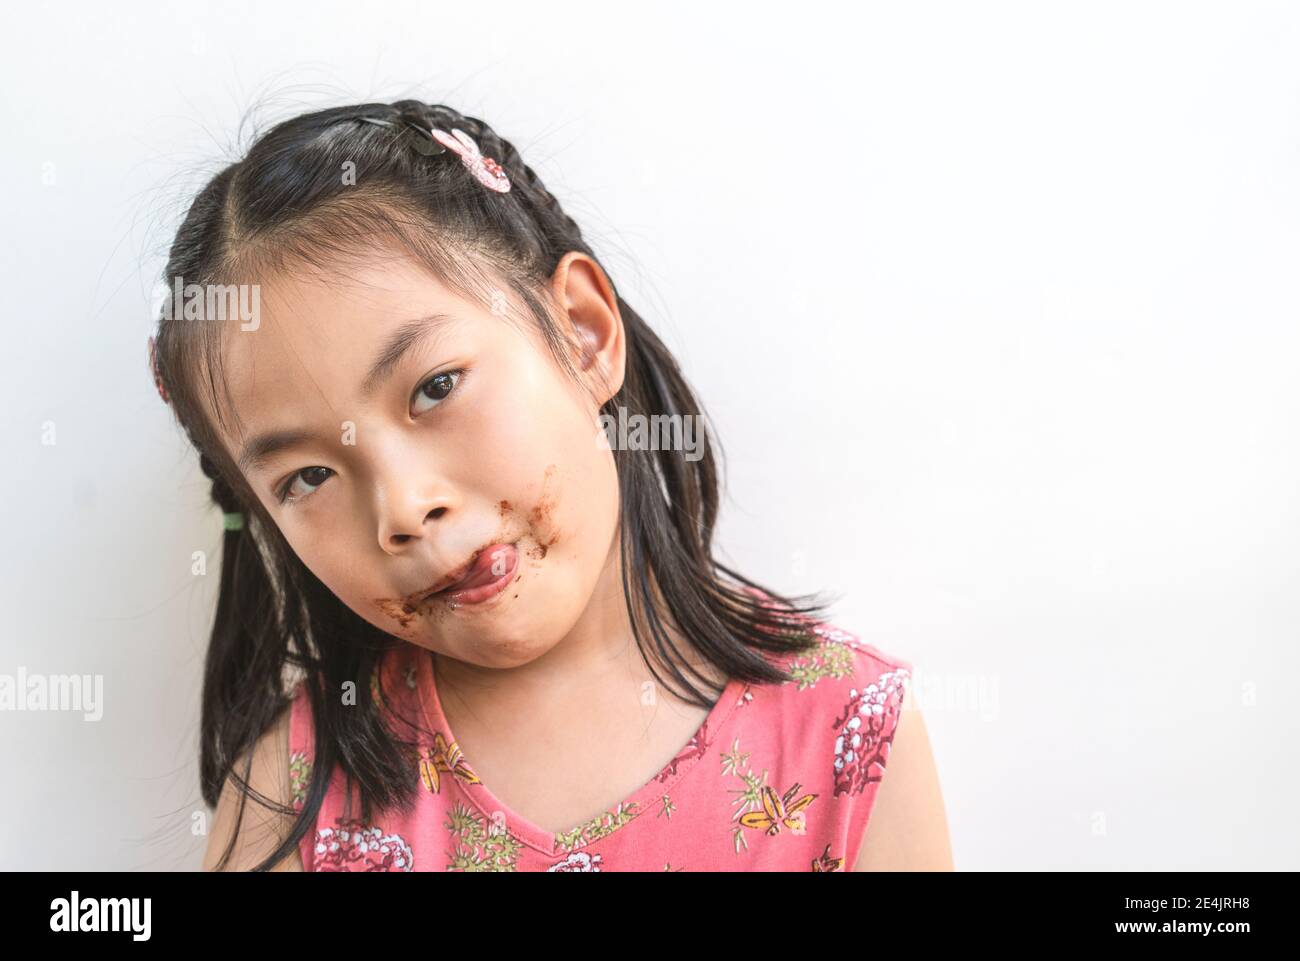 Portrait Asian nettes Kind Mädchen mit chaotisch von Schokolade um den Mund, Zunge leckt Lippen, schwarze Haare, tragen schöne rosa Kleid, isoliert Bild Stockfoto